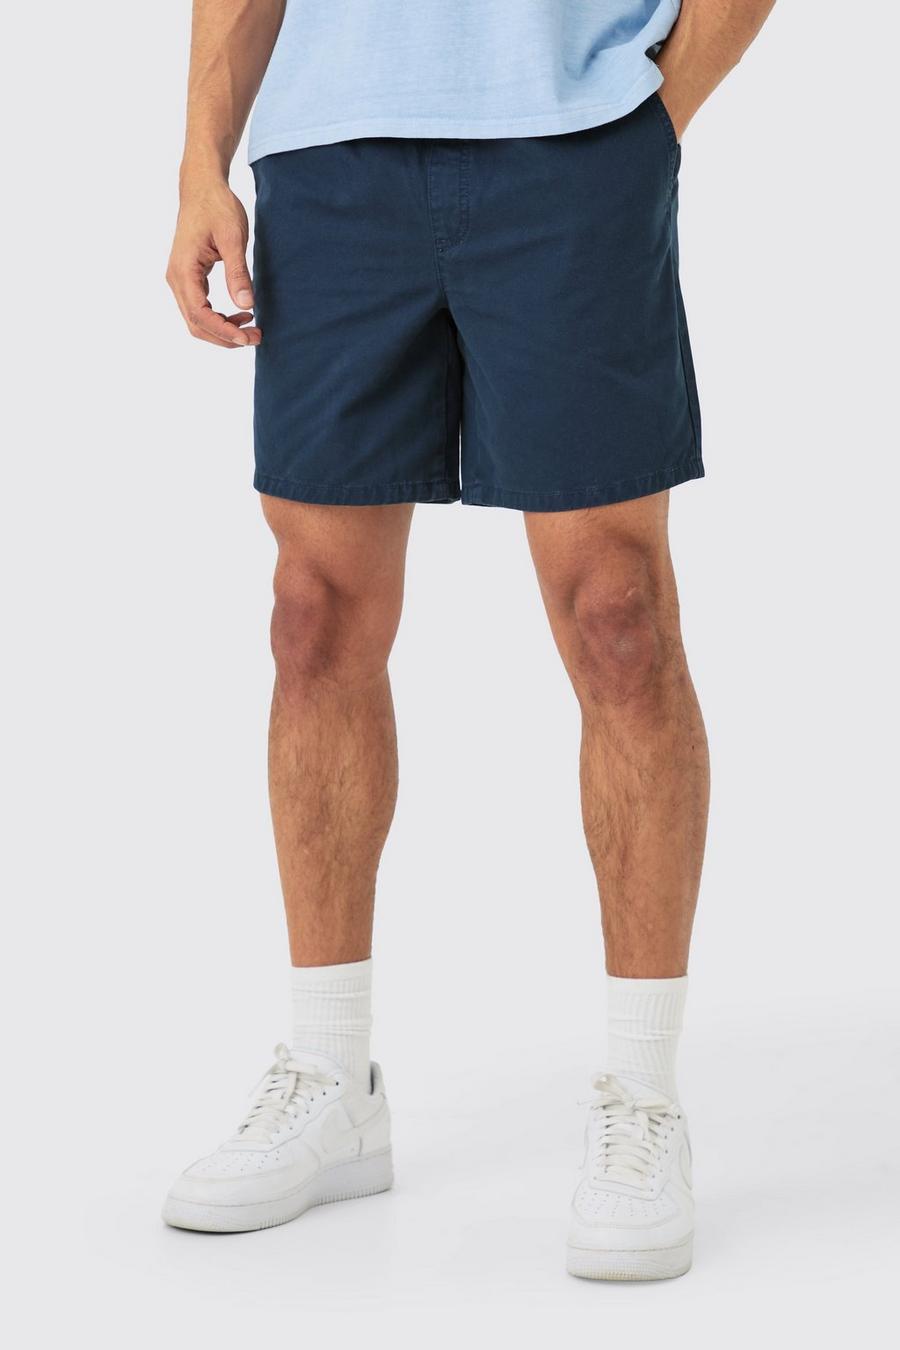 Pantalones cortos holgados Everyday en azul marino, Navy image number 1